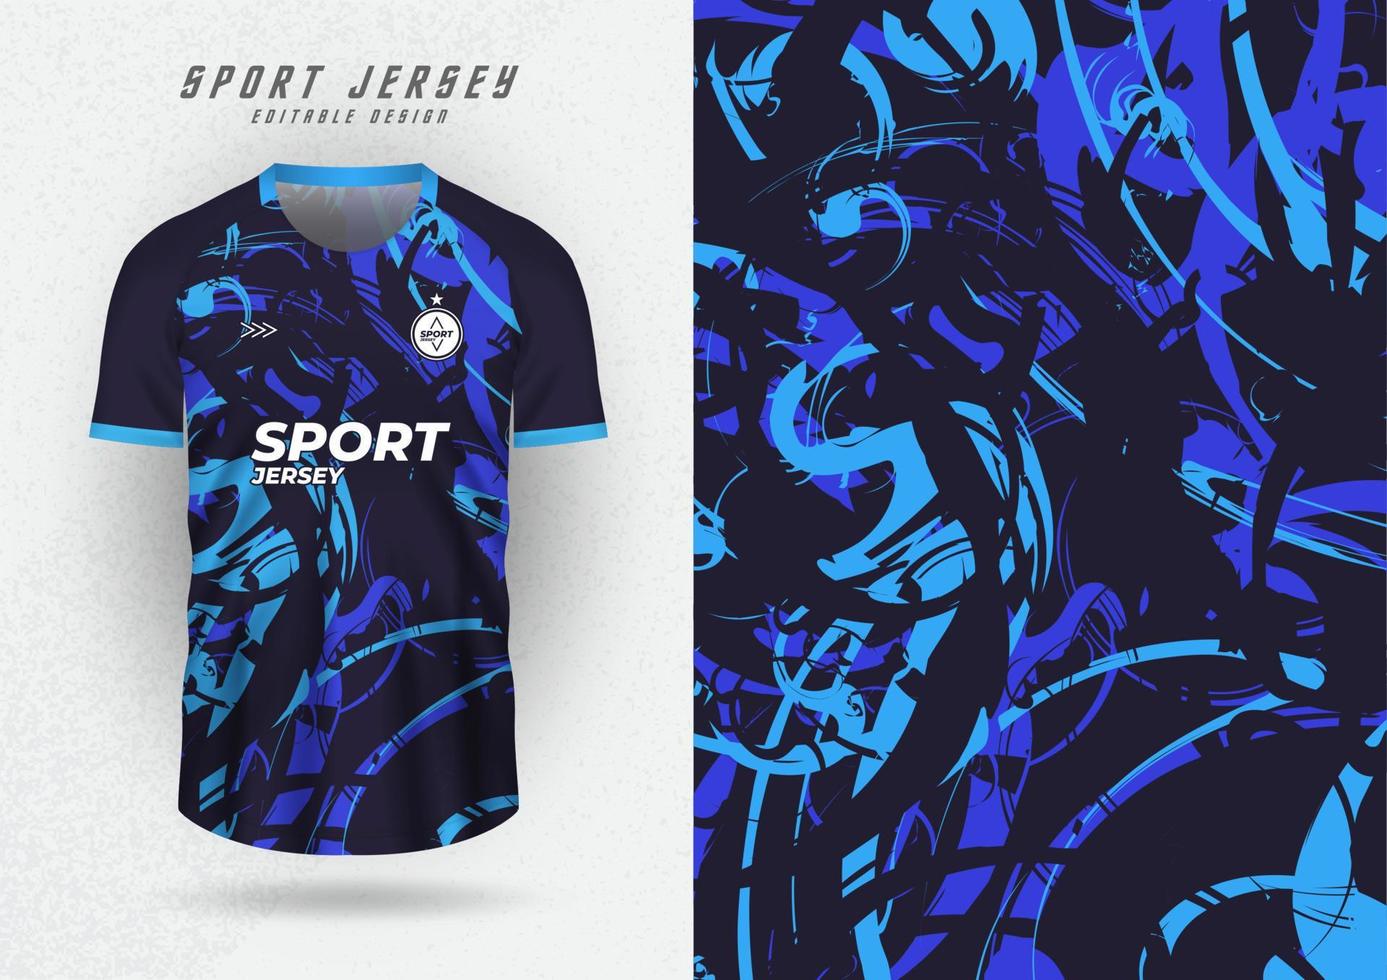 achtergrond voor sport- Jersey, voetbal Jersey, rennen Jersey, racing Jersey, patroon, blauw toon water kleur. vector